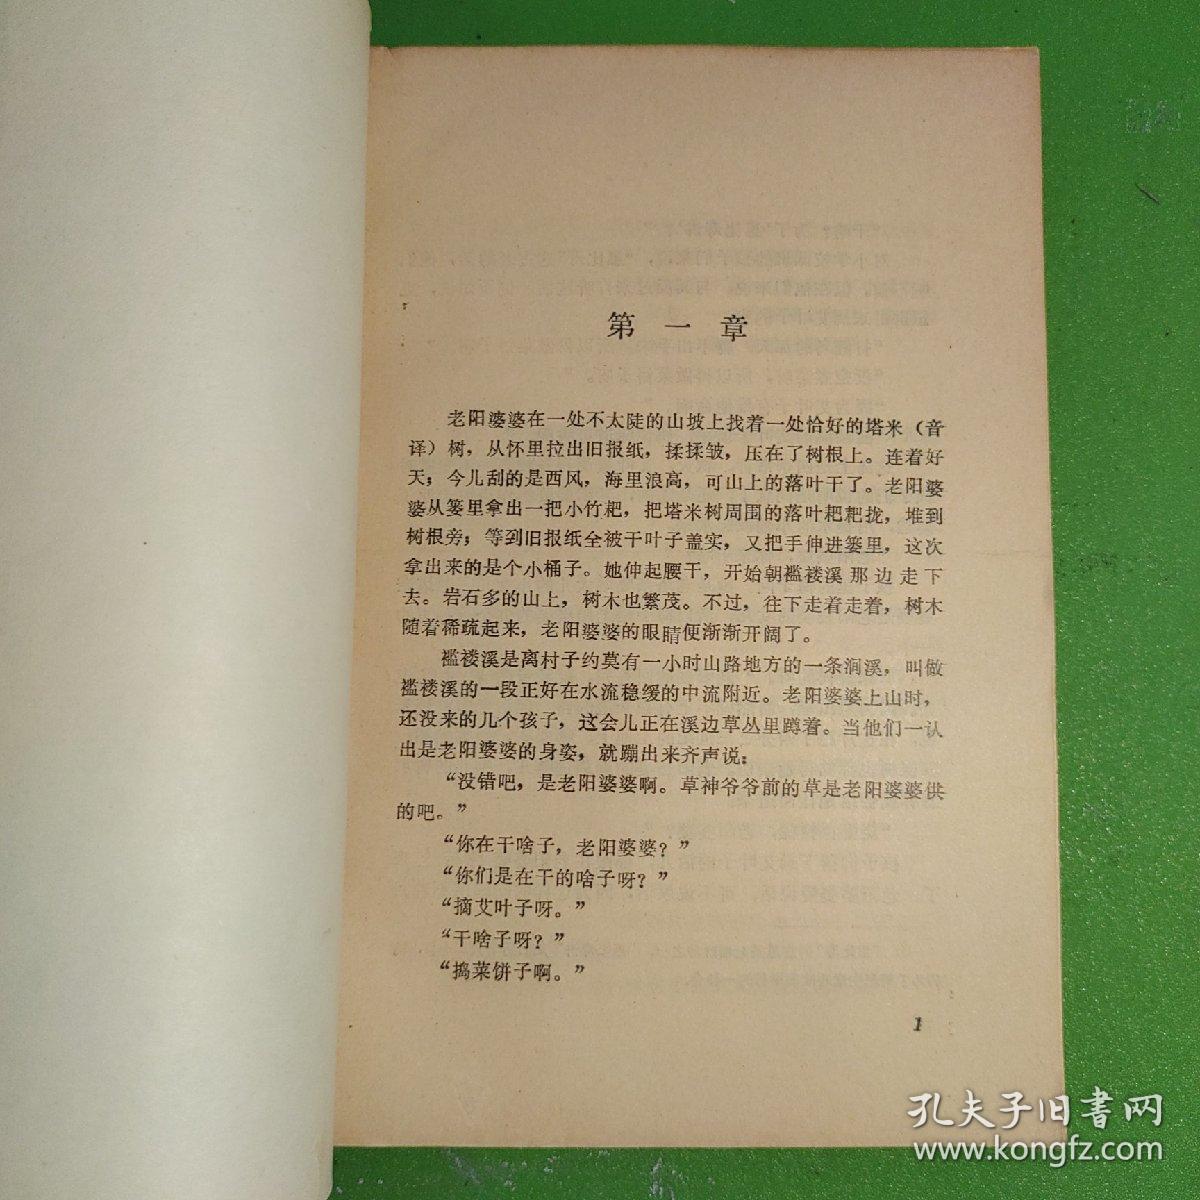 暗流-亚非拉文学丛书-有吉佐和子-中国文艺联合出版公司-1984年一版一印